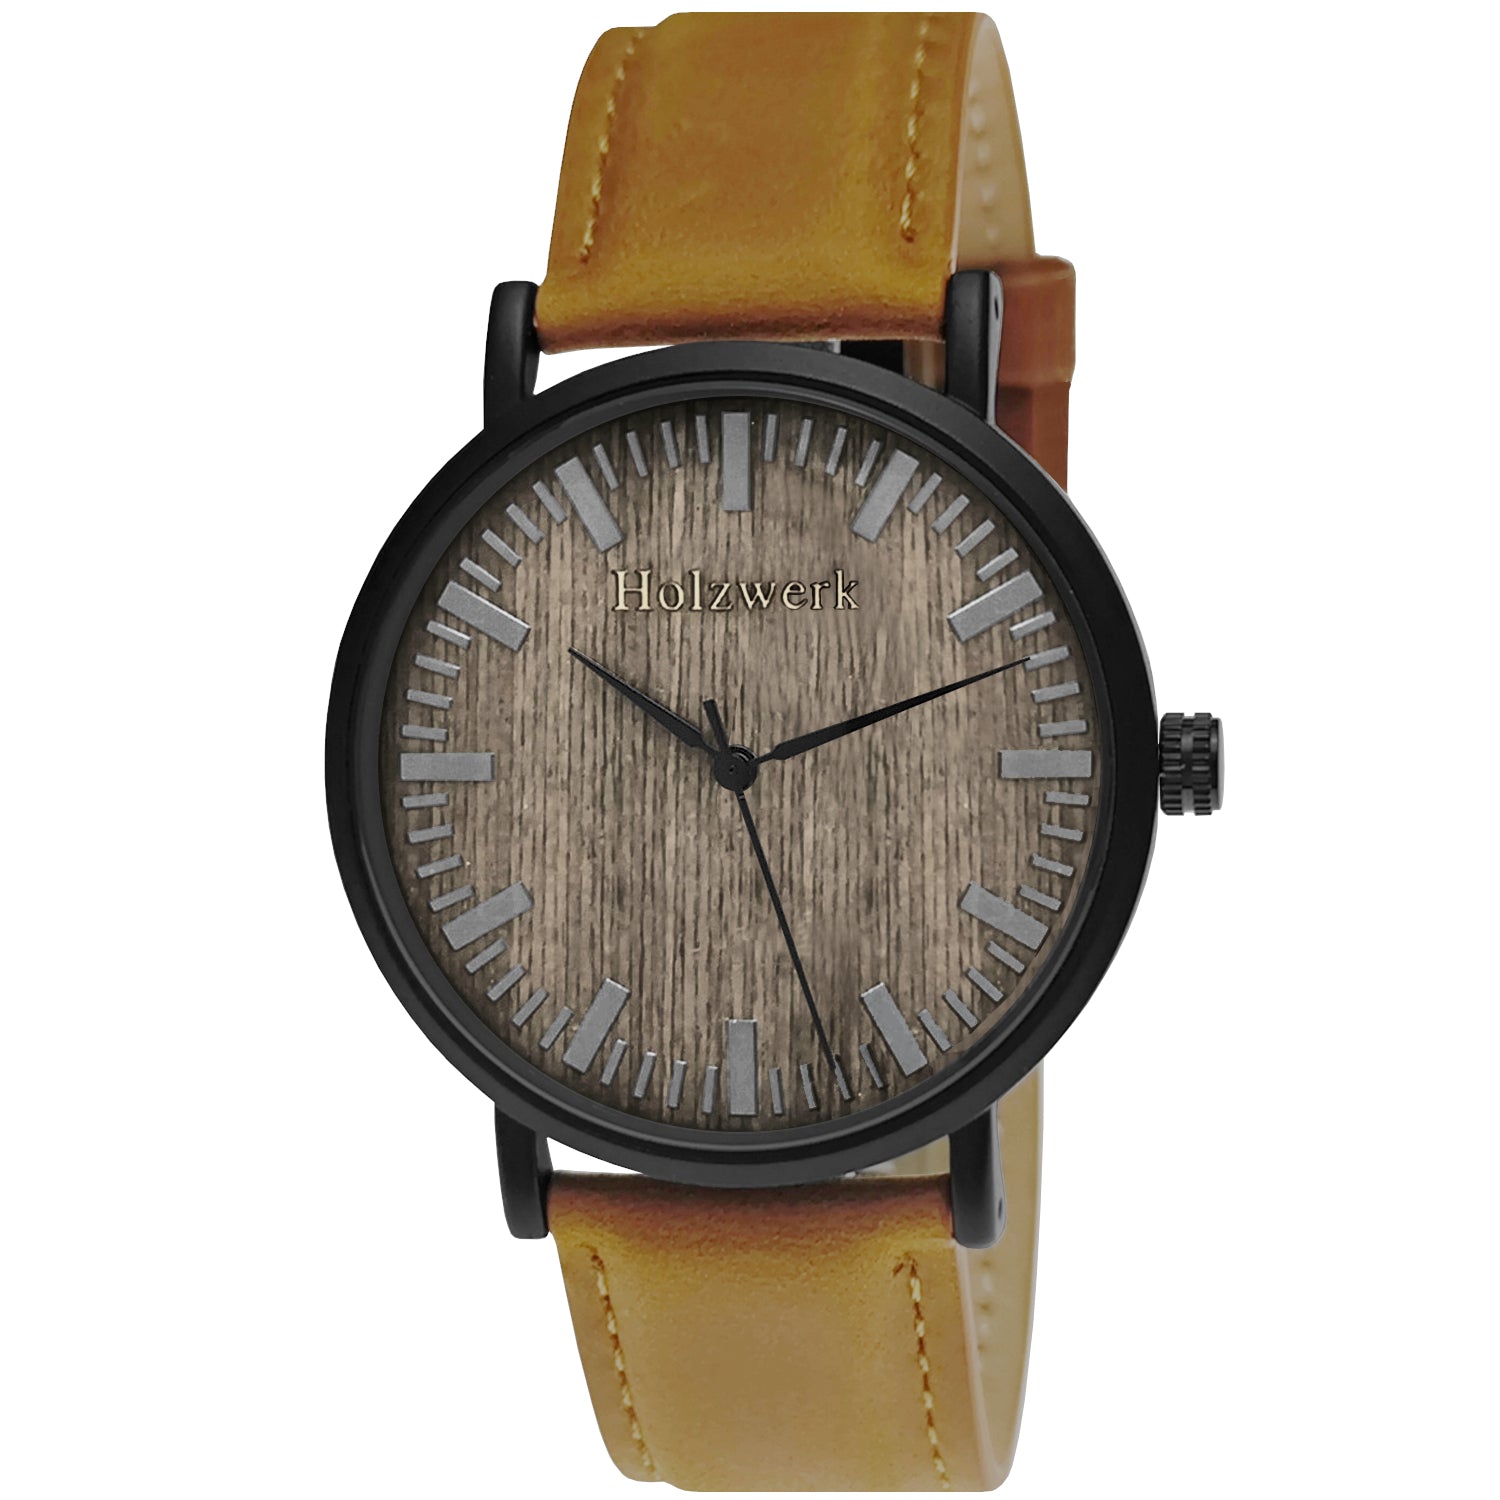 Holzwerk NECKAR Damen und Herren Leder & Edelstahl Holz Armband Uhr, Damenuhr, Herrenuhr, flache 4 mm Armbanduhr, Holzuhr, braun, schwarz, Hauptbild